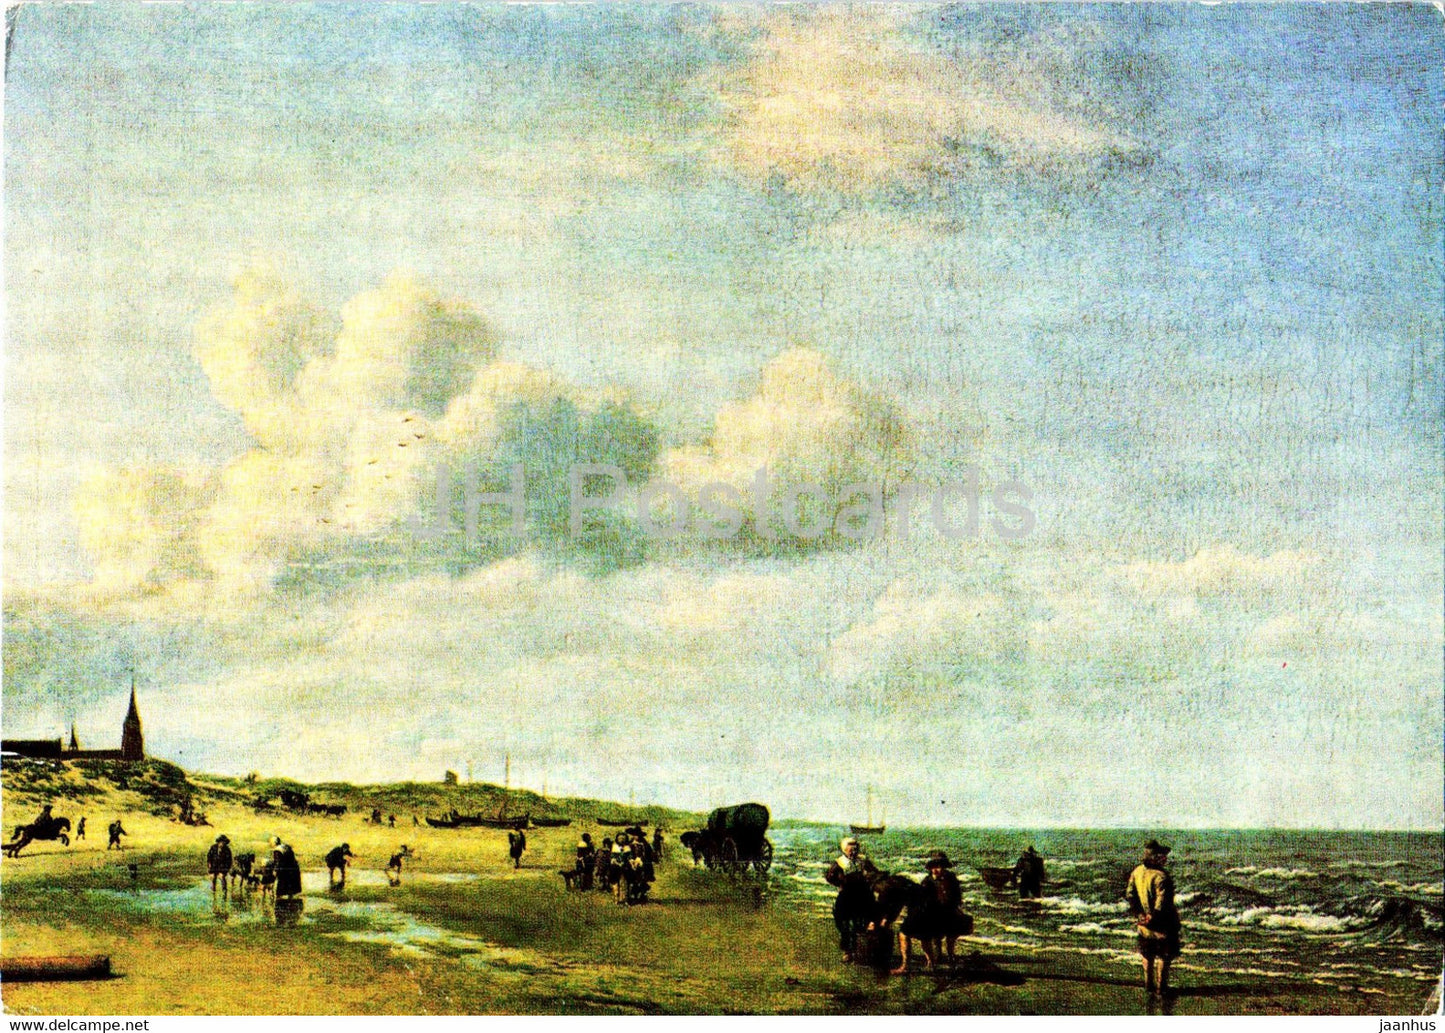 painting by Adriaen van de Velde - Der Strand von Scheveningen - Dutch art - old postcard - Germany - used - JH Postcards